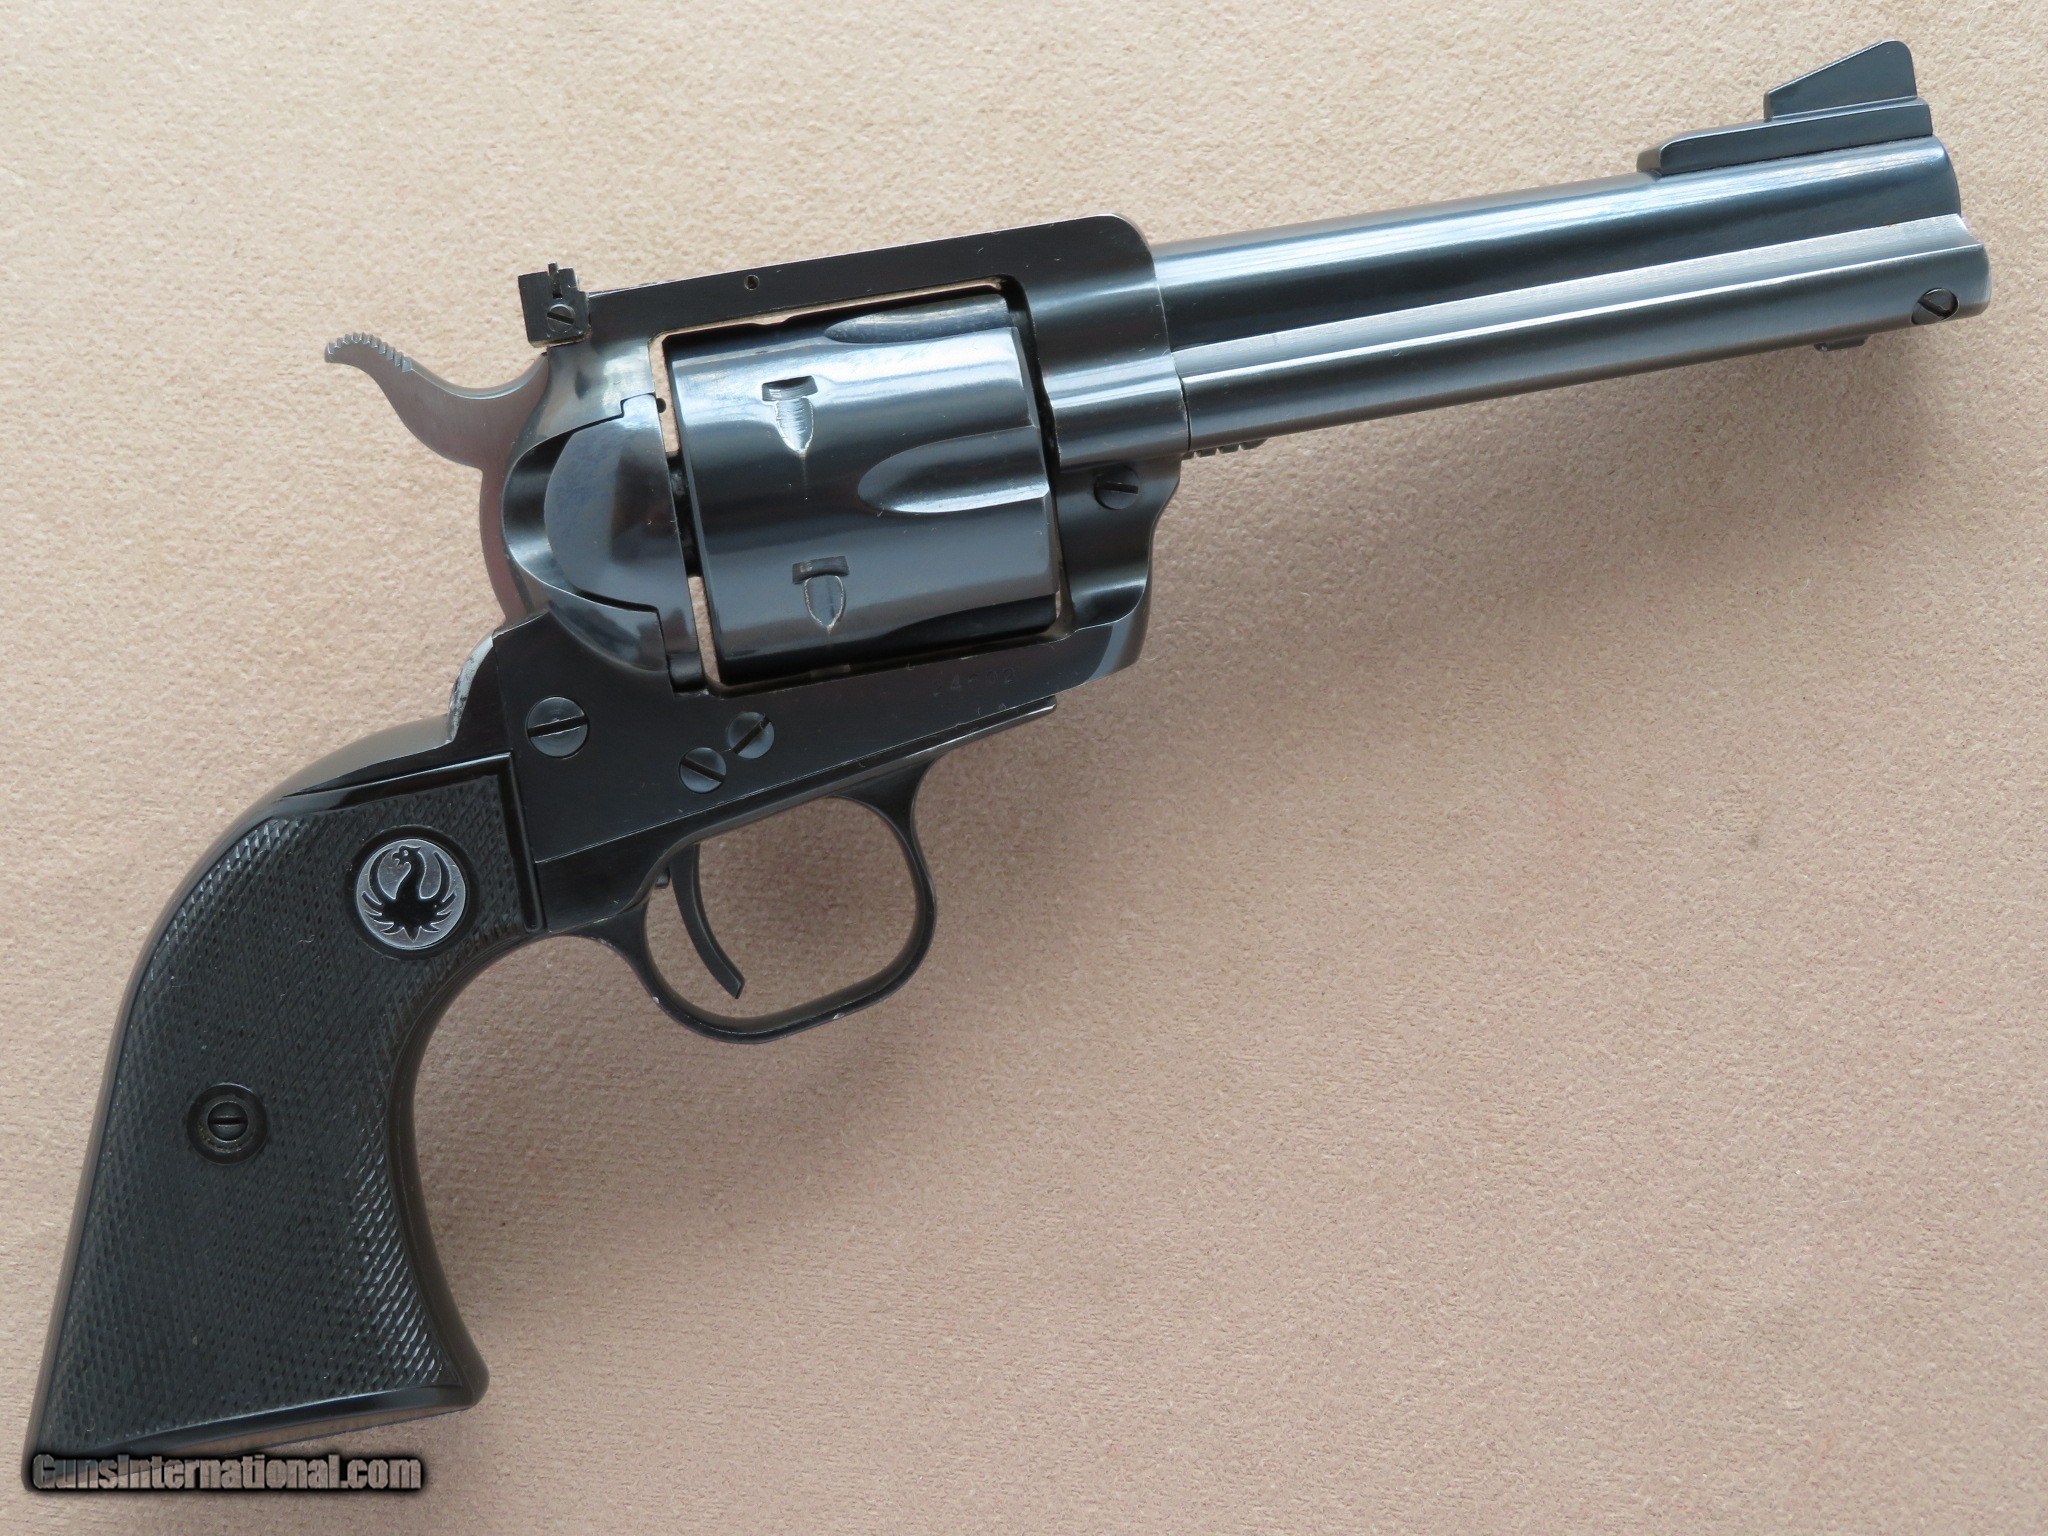 Magnum revolver blackhawk ruger 357 Brand